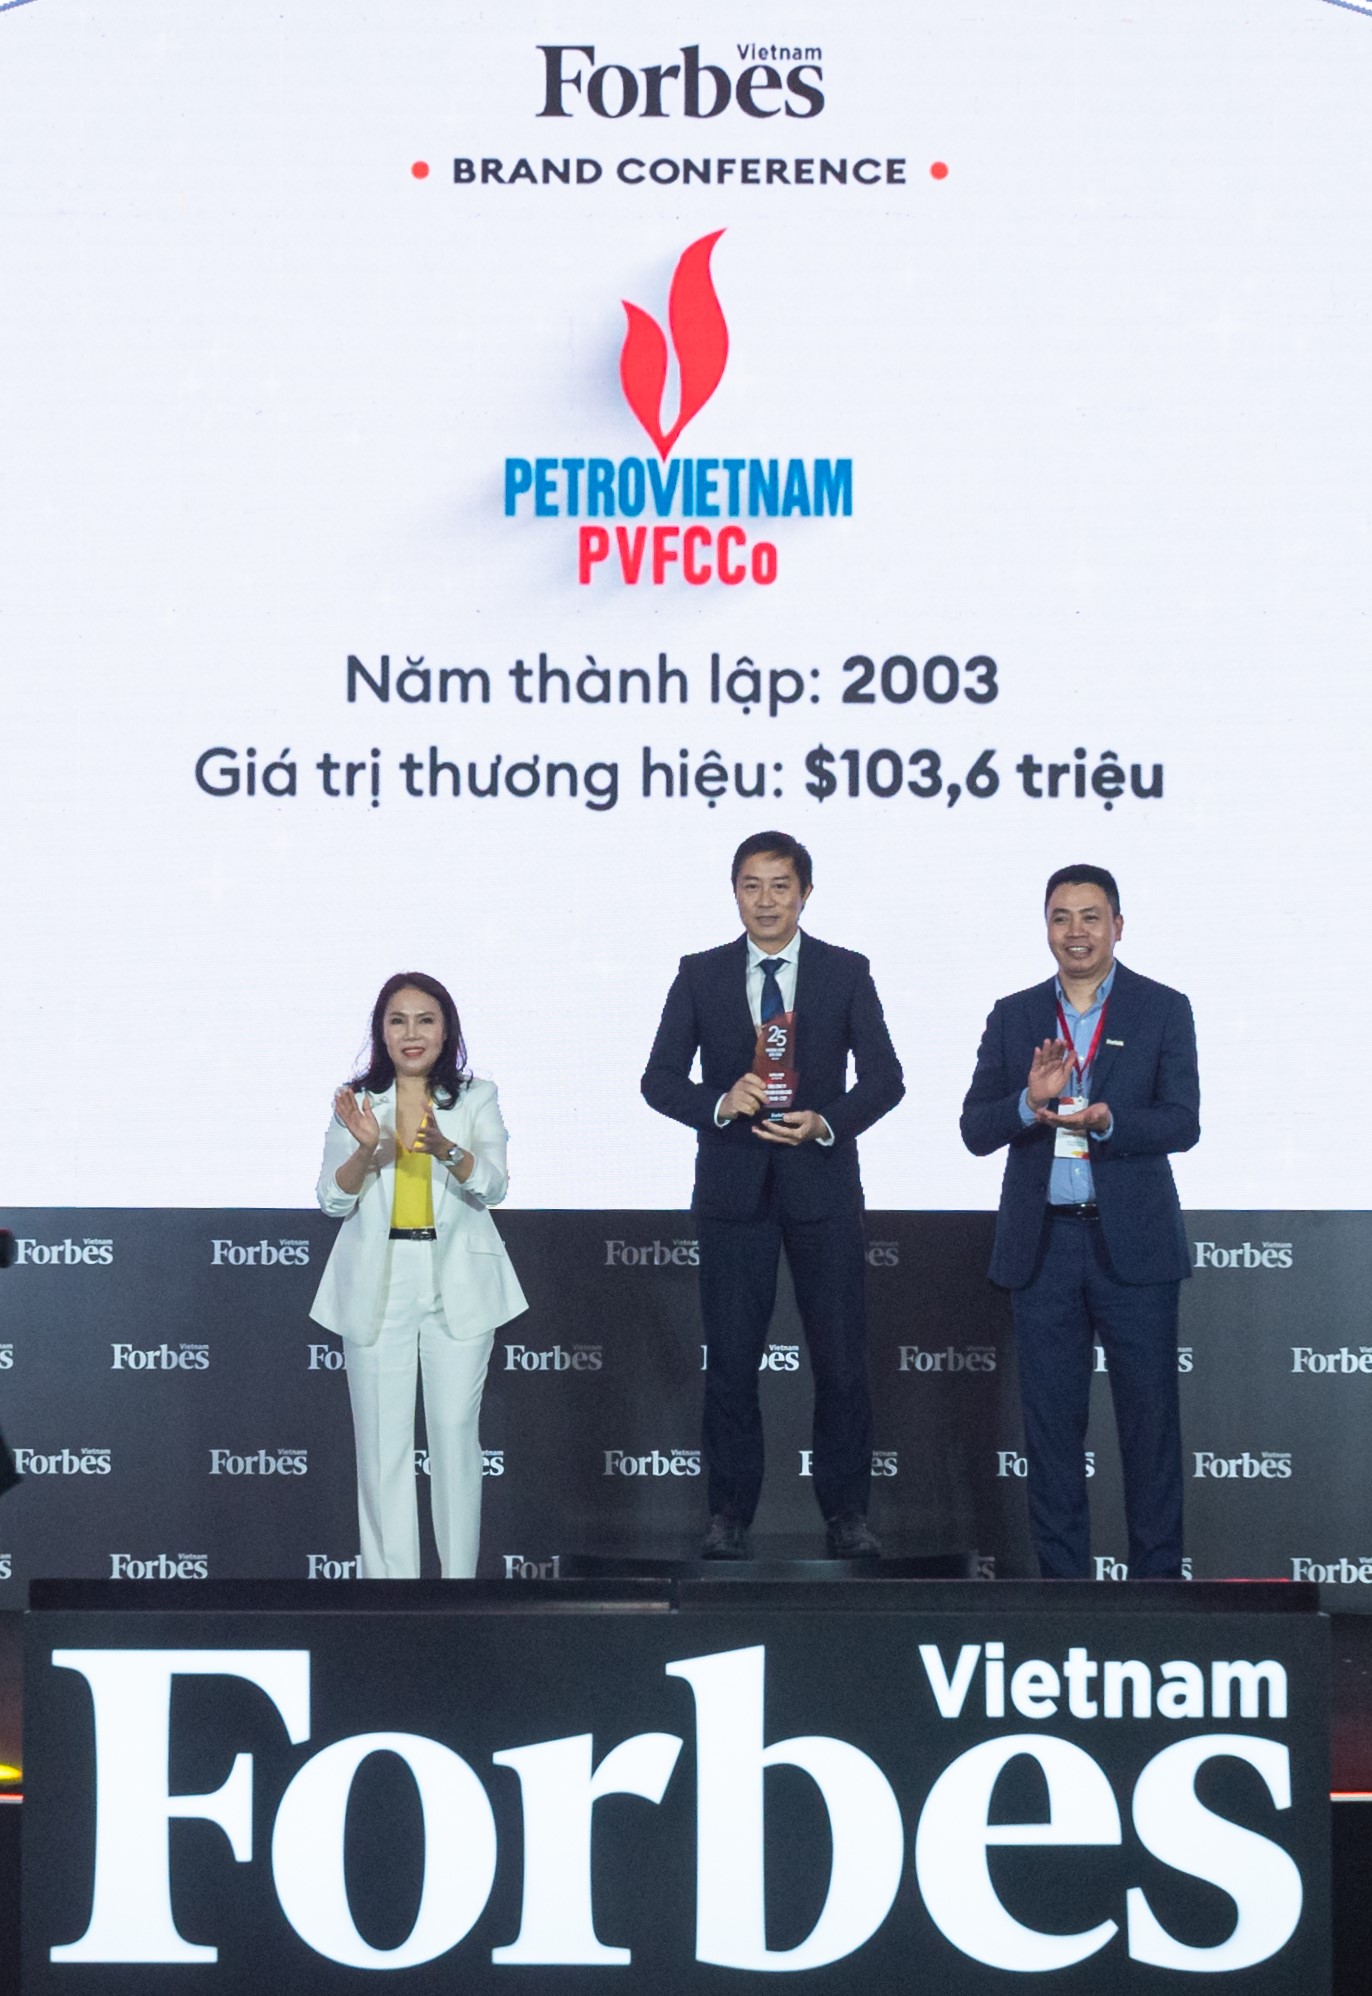 PVFCCo - Top 3 thương hiệu có giá trị nhất Việt Nam trong lĩnh vực hàng tiêu dùng cá nhân và công nghiệp